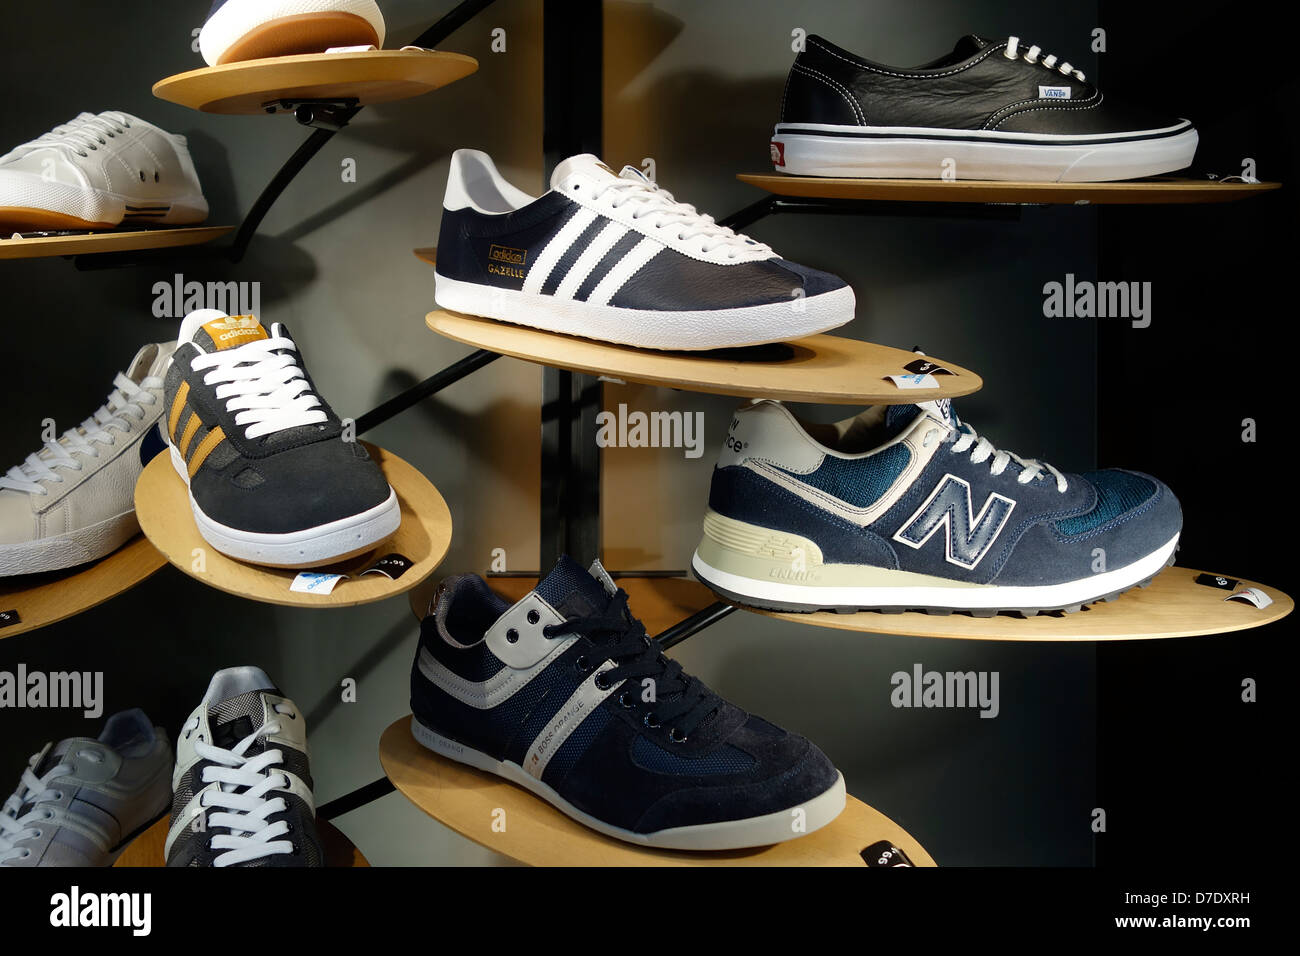 Trainer-Fenster Anzeige Adidas Shop Stockfoto